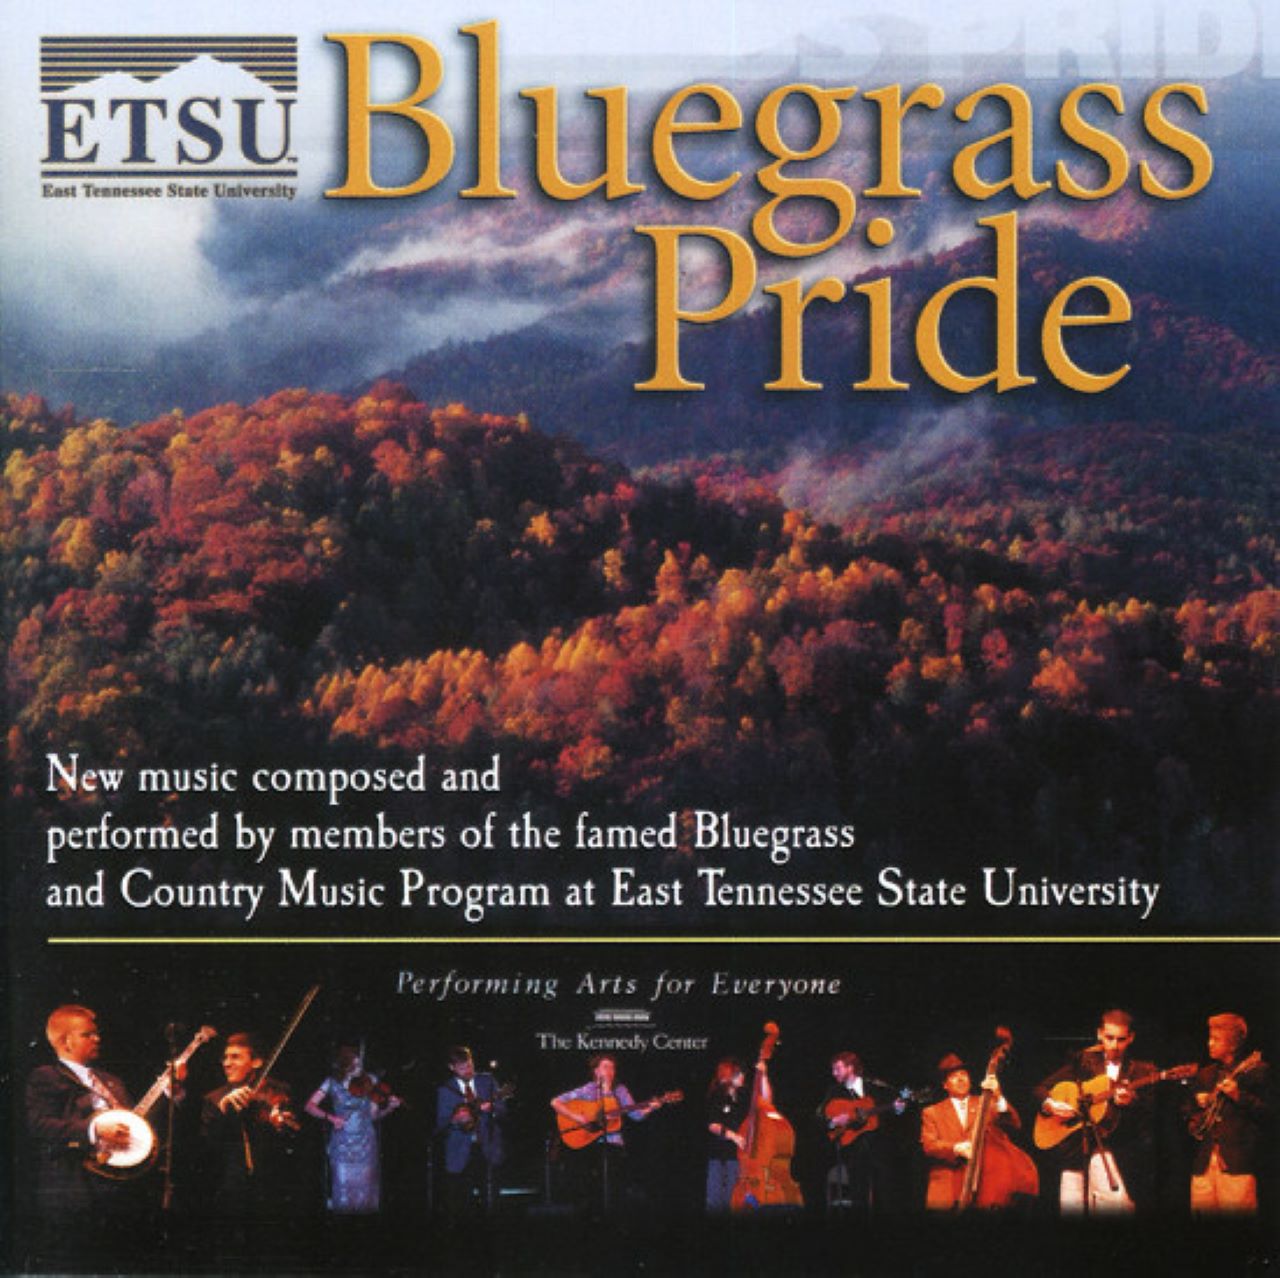 A.A.V.V. – ETSU Bluegrass Pride cover album